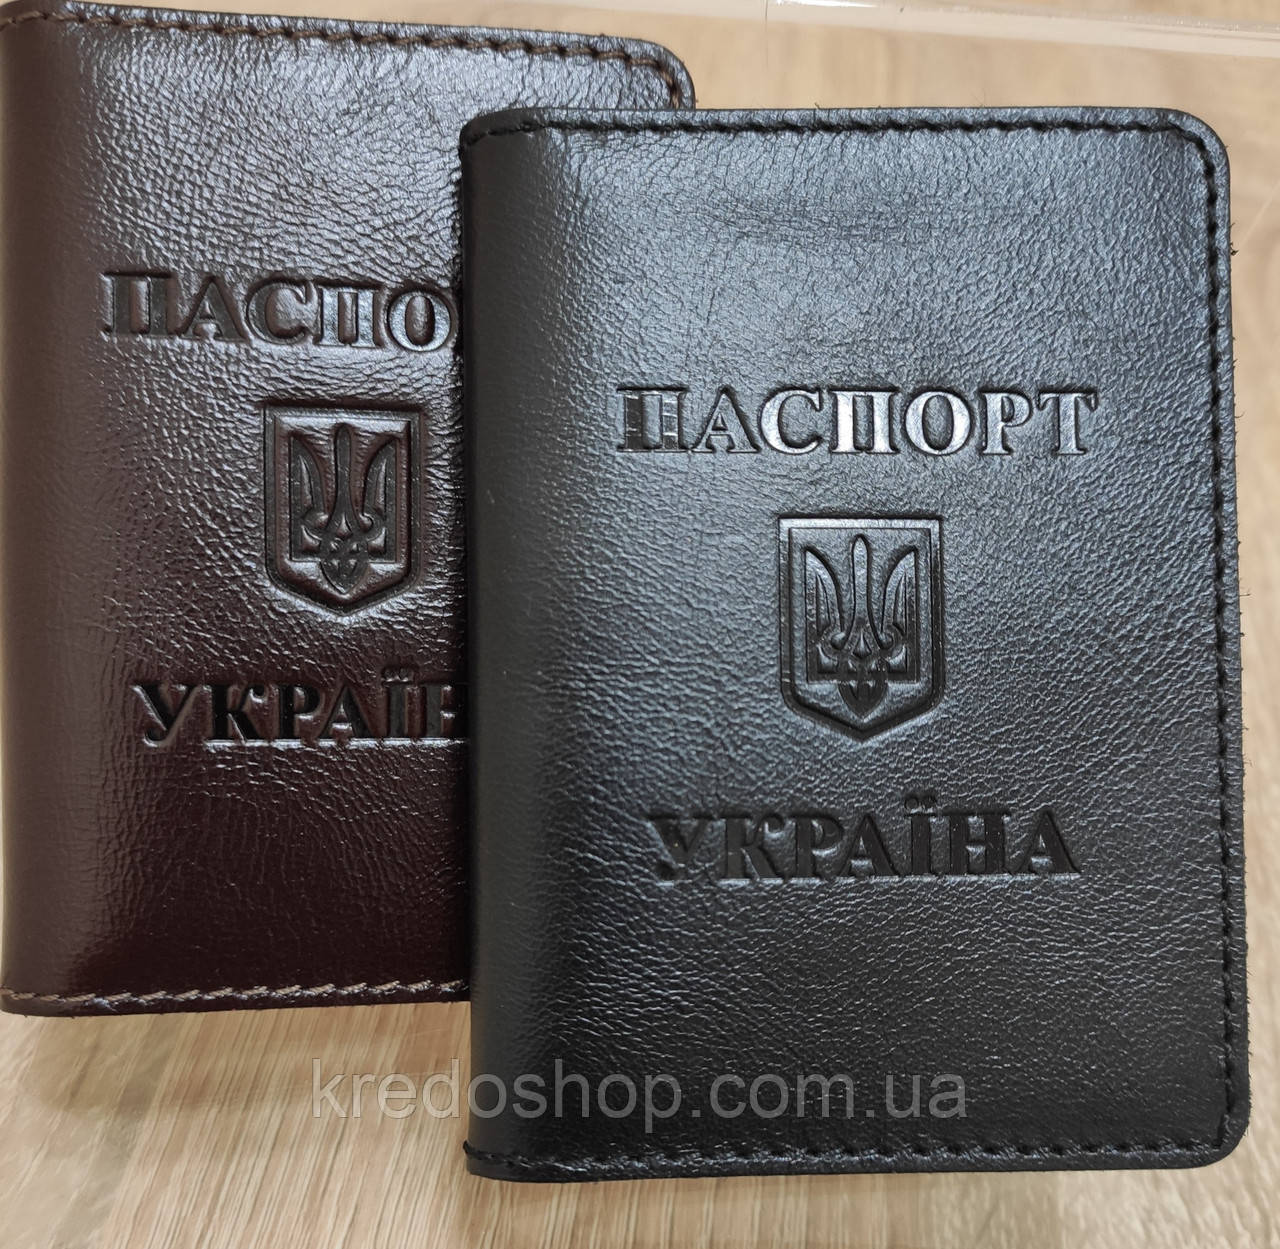 Шкіряна обкладинка ID документи посвідчення чорна (Україна)